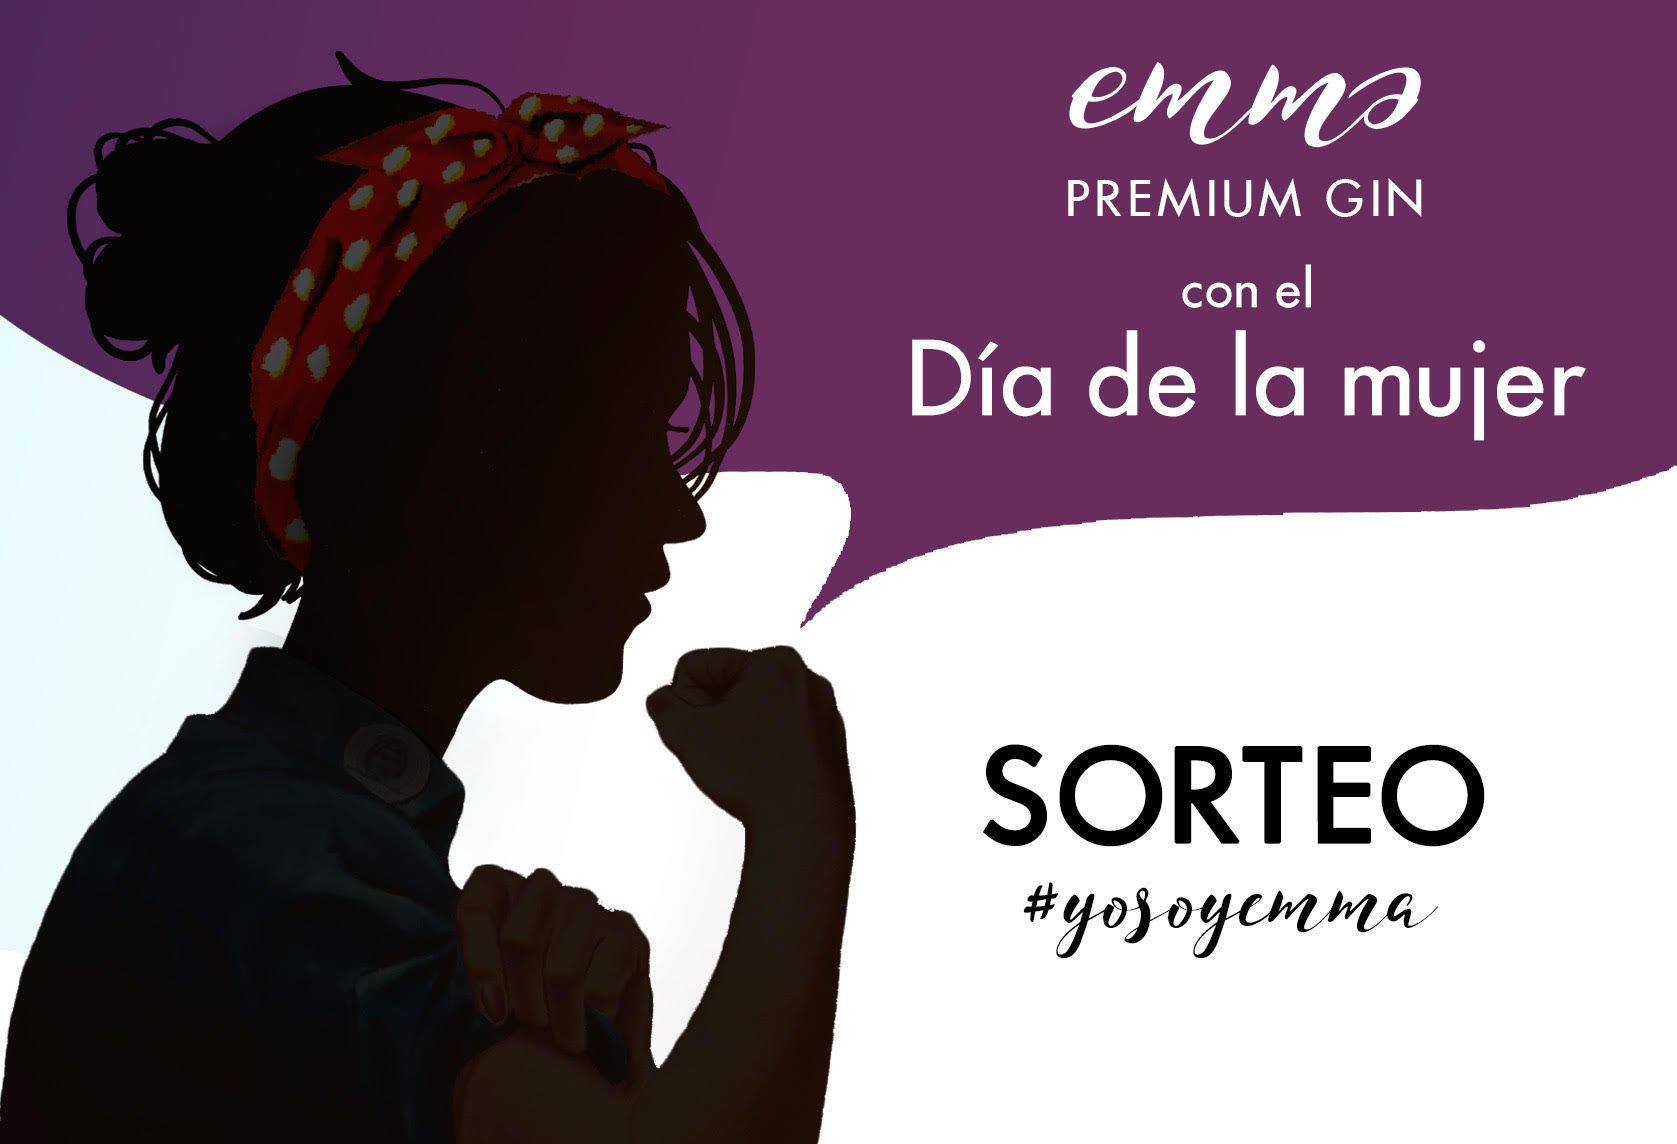 Emma Premium Gin participa en el Día de la Mujer